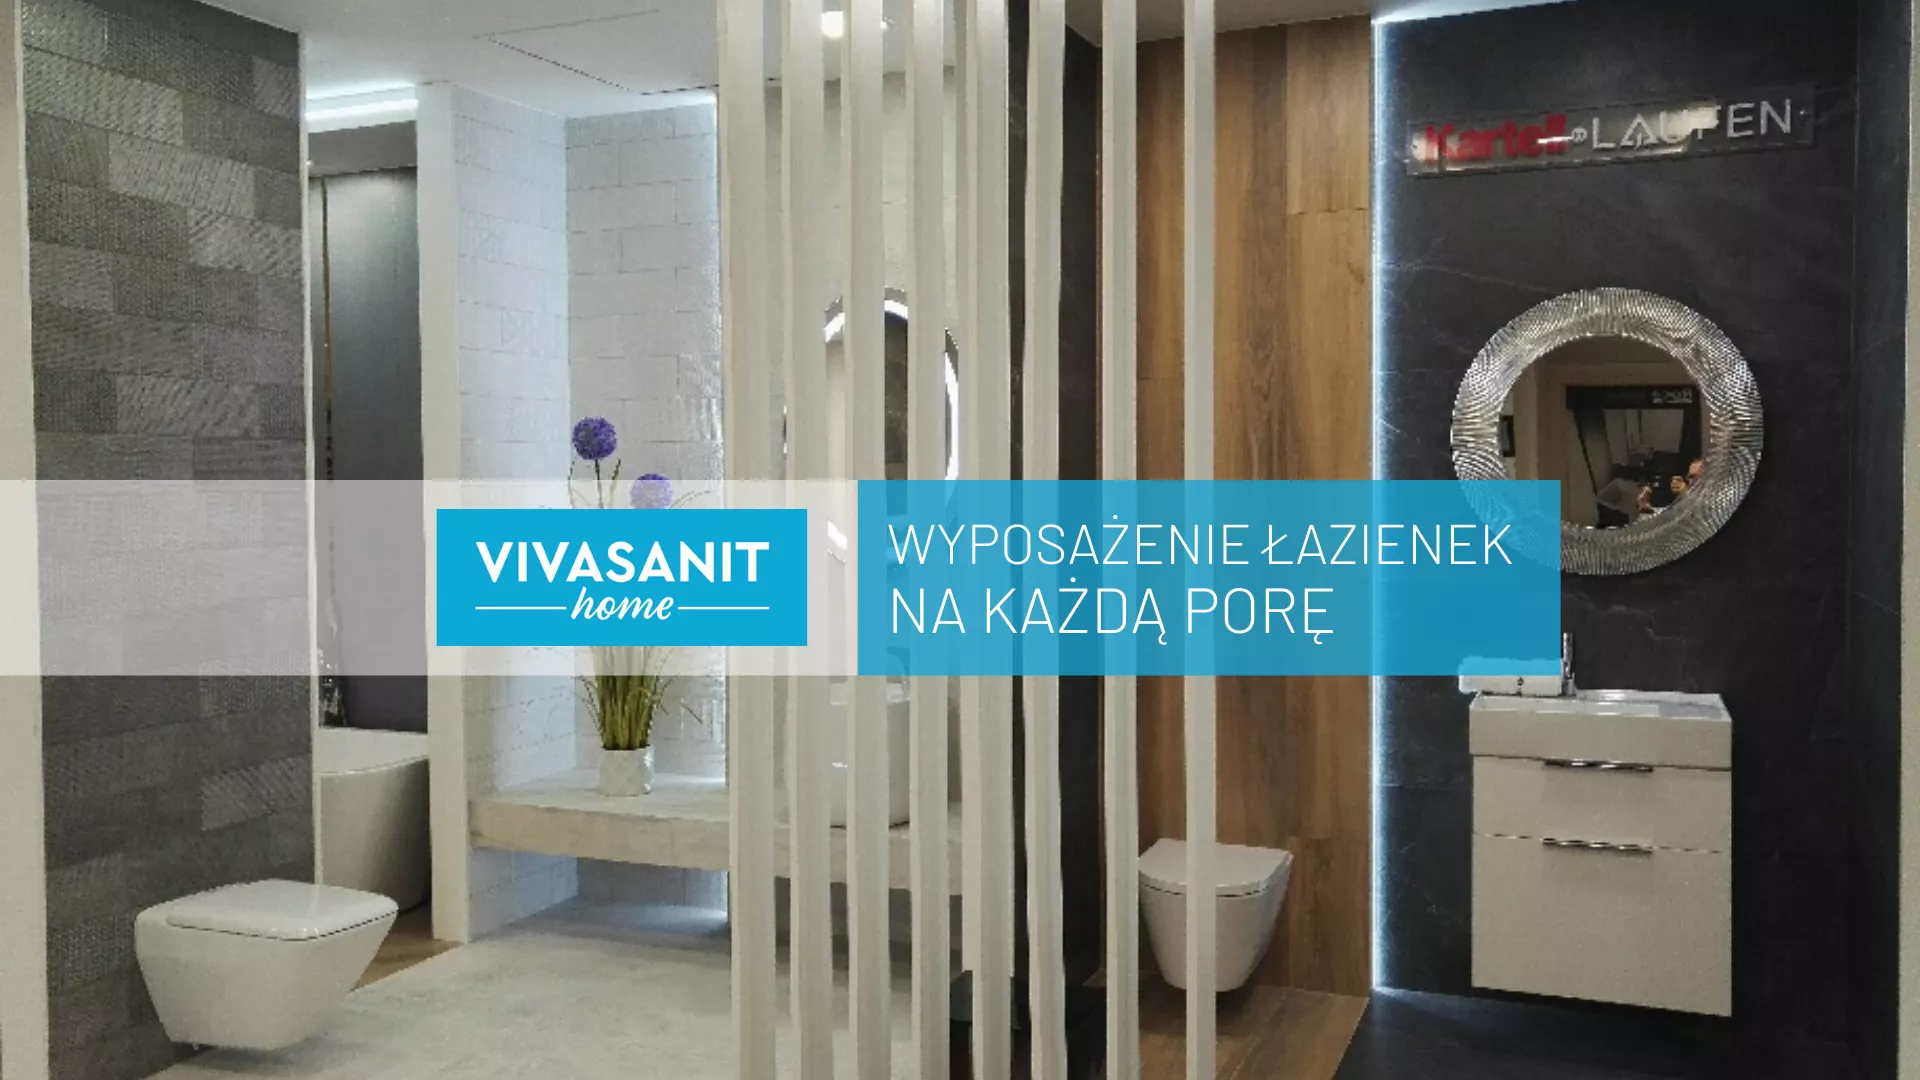 VivaSanitHome - wyposażenie łazienek